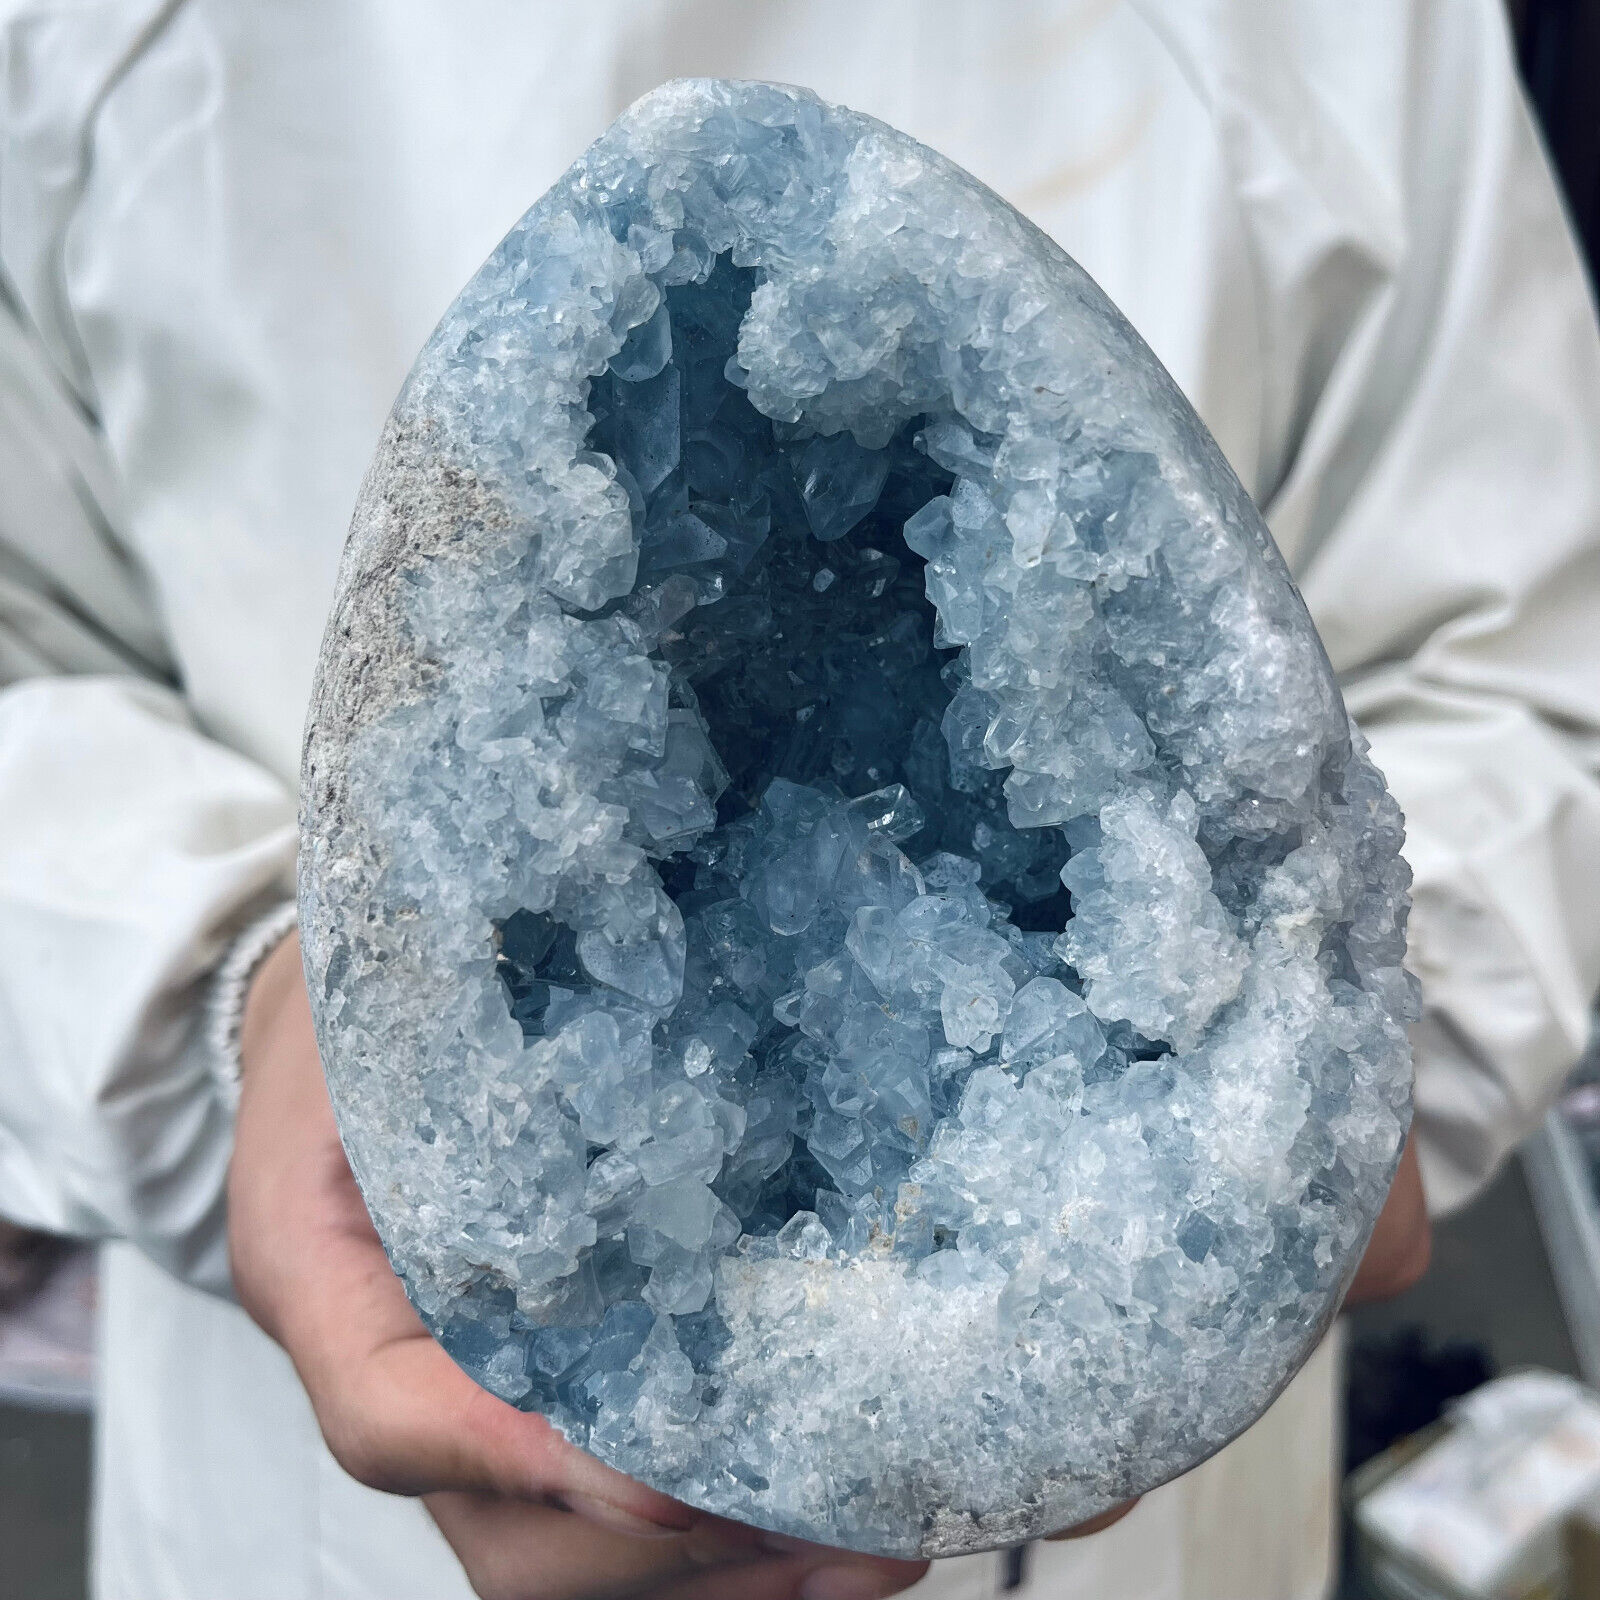 7.1lb Large Natural Blue Celestite Crystal Geode Quartz Cluster Mineral Specime